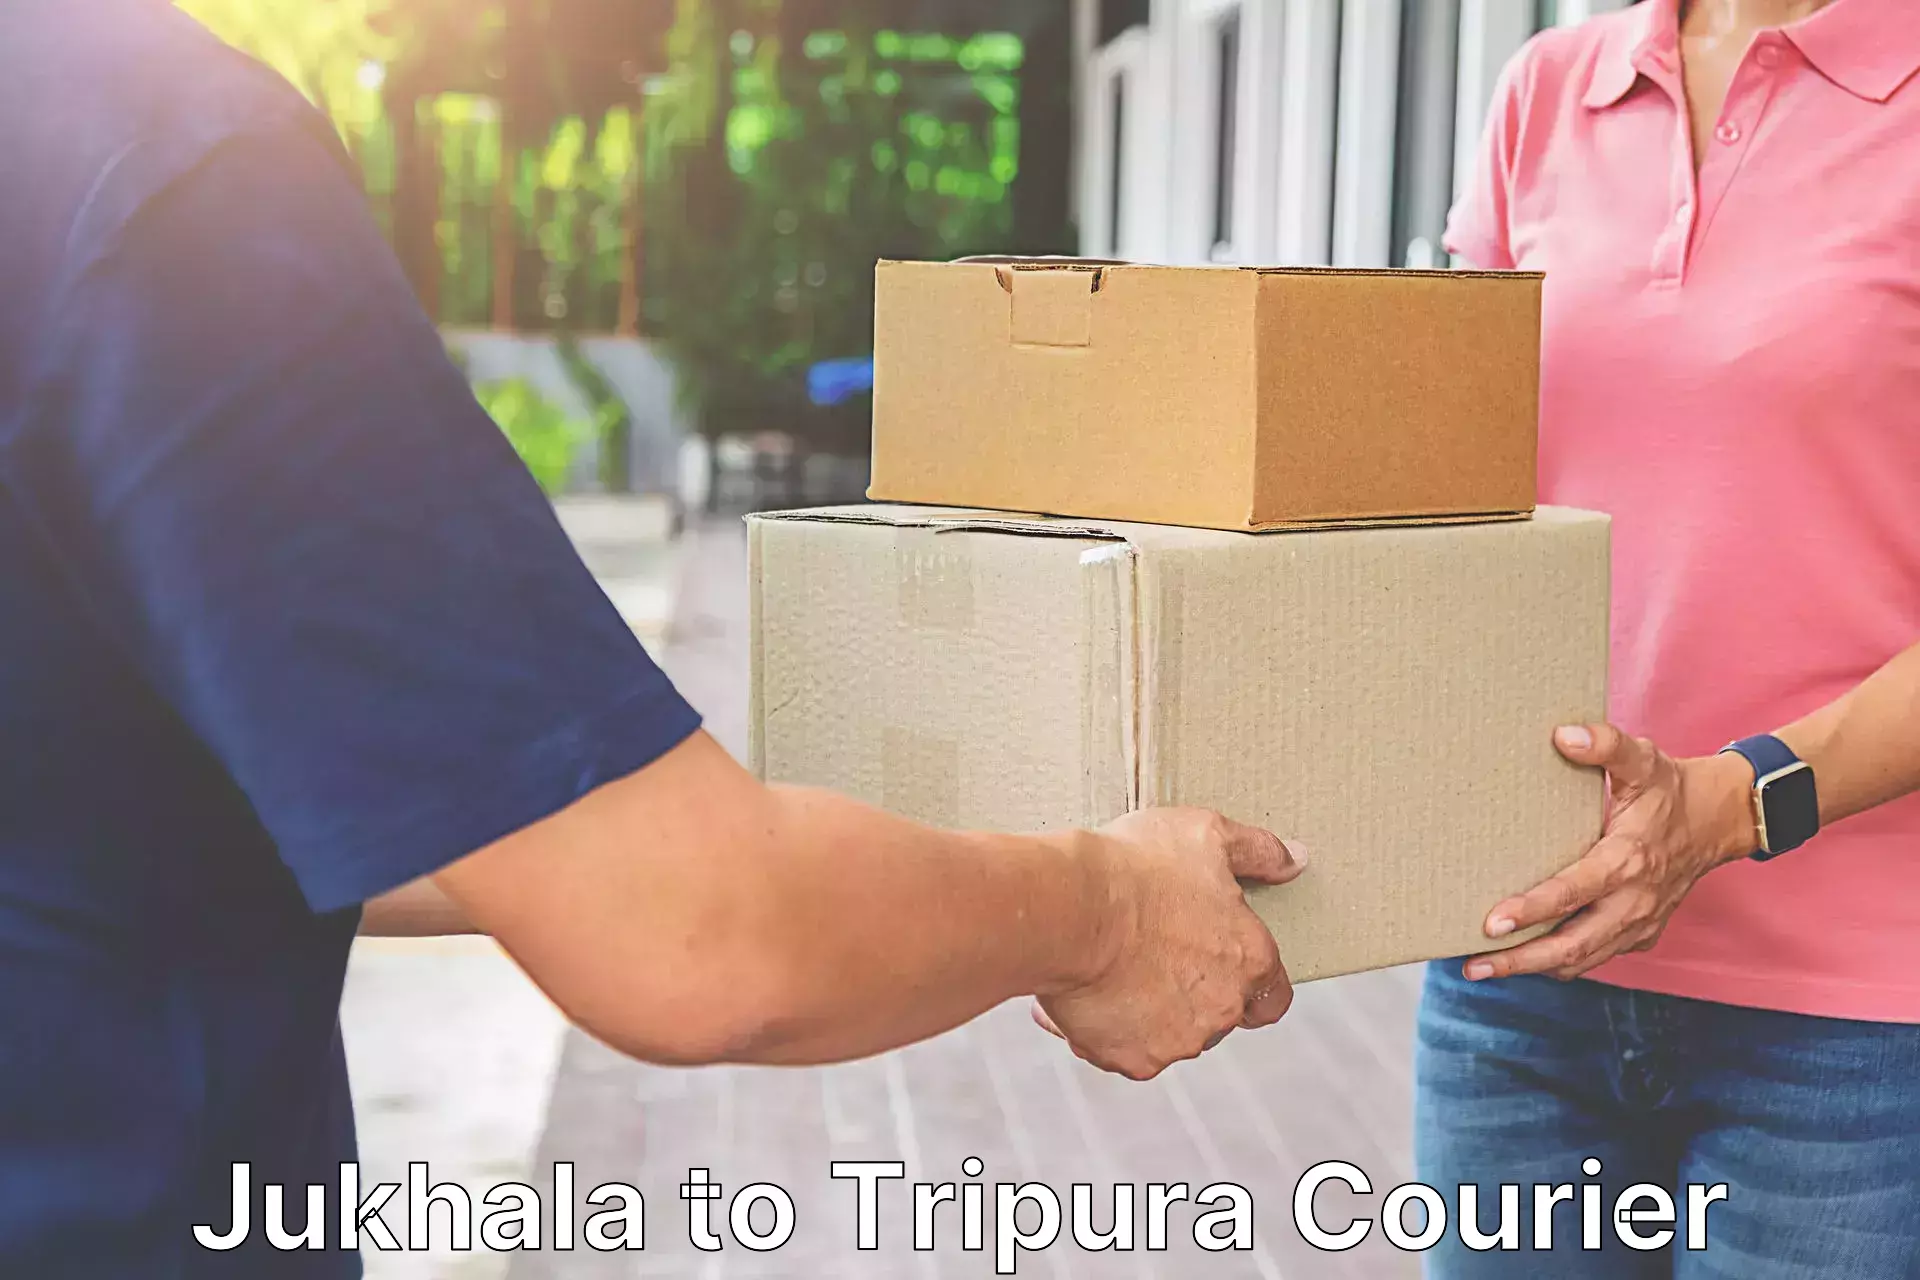 24-hour courier service Jukhala to Agartala